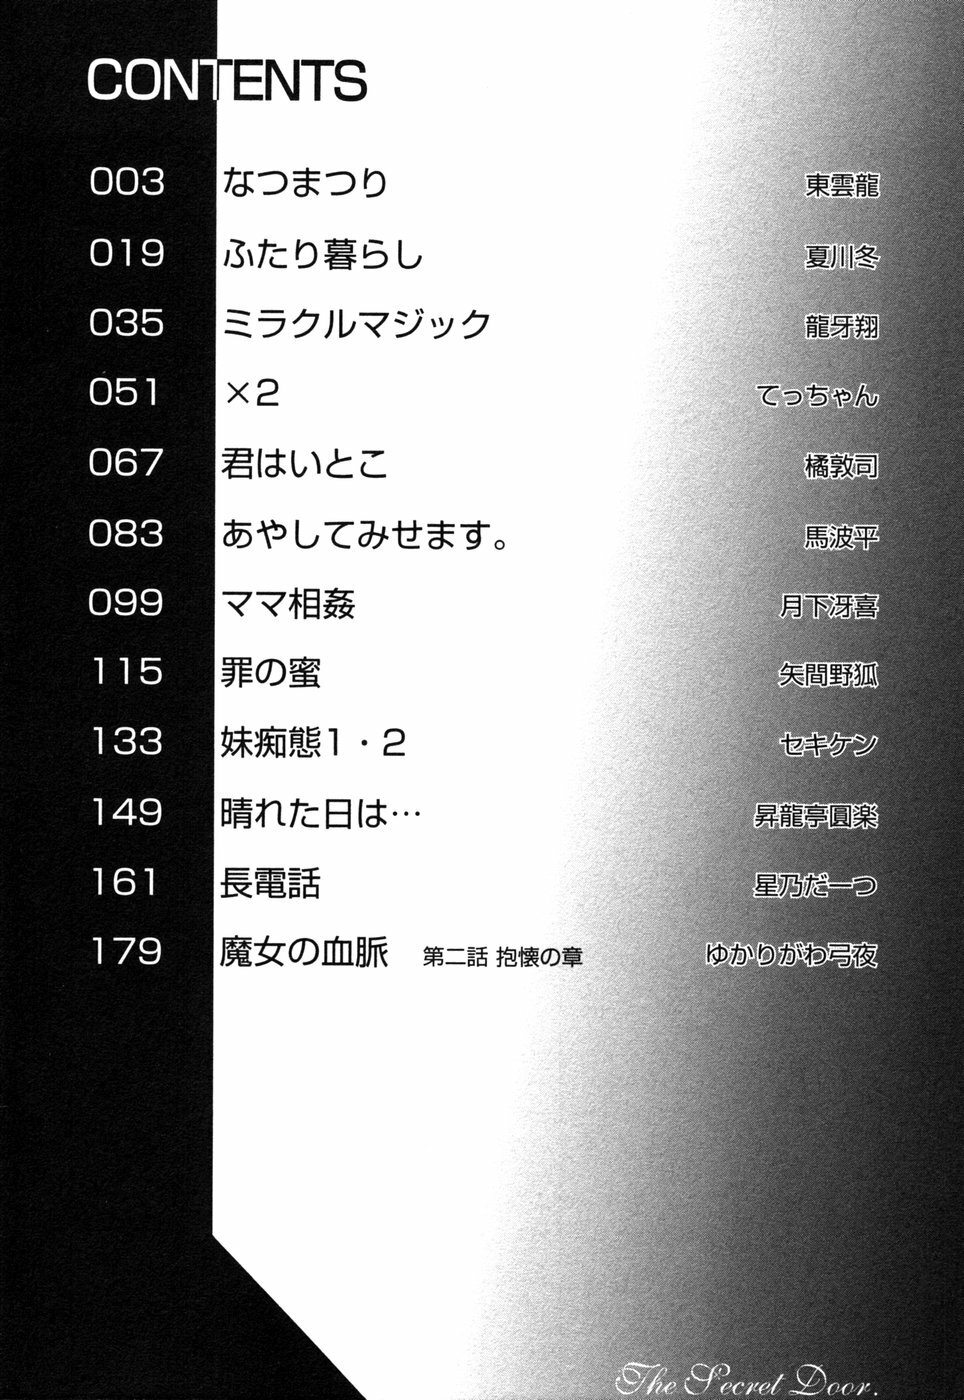 [Anthology] Himitsu no Tobira 5 Kinshin Ai Anthology (The Secret Door) page 5 full